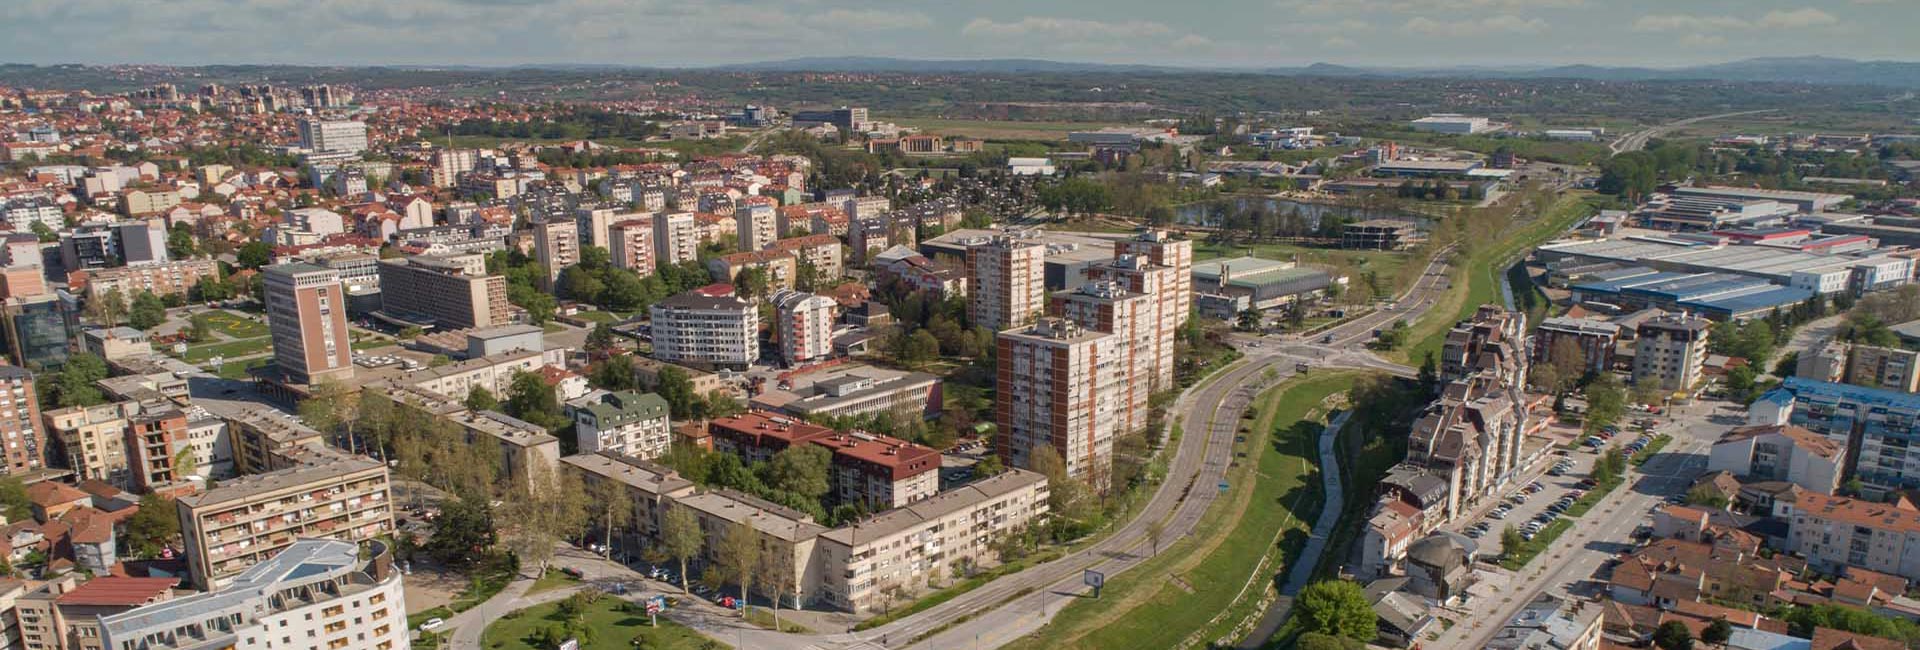 Viljuškari Srbija | Kragujevac